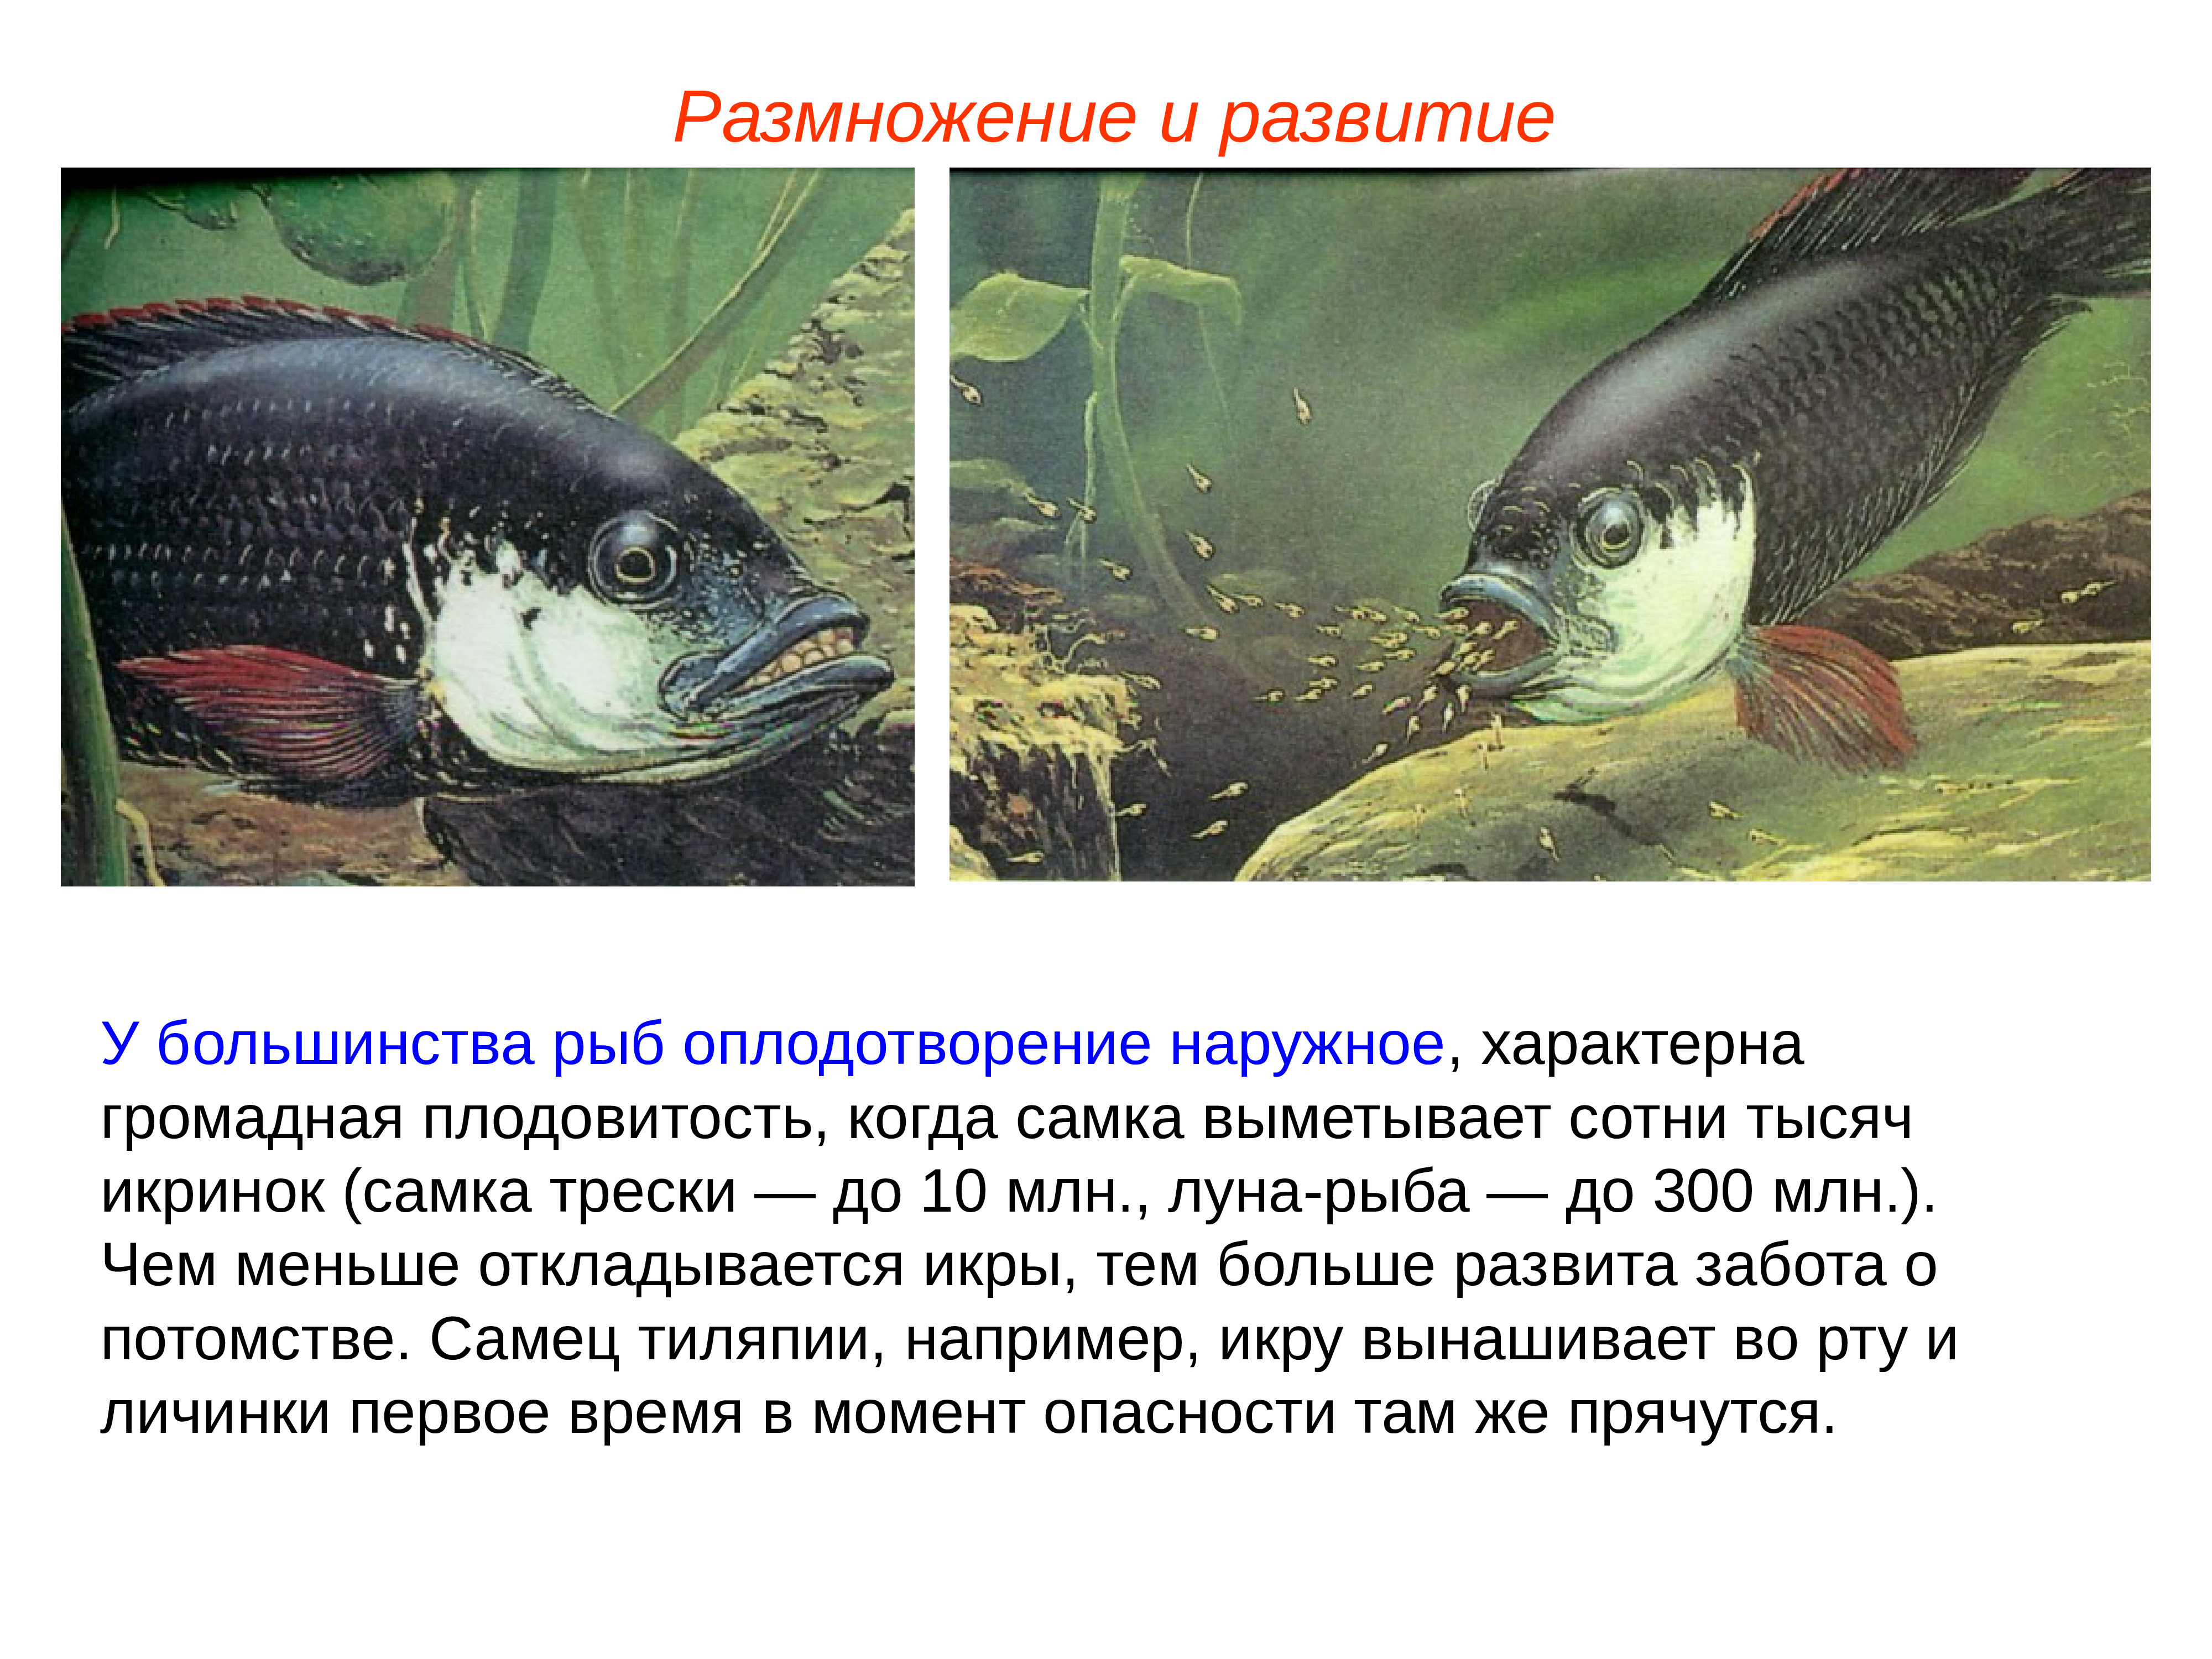 Лосось внутреннее оплодотворение. Наружное осеменение рыб. Оплодотворение у большинства рыб. Наружное оплодотворение у рыб. Размножение и развитие рыб.